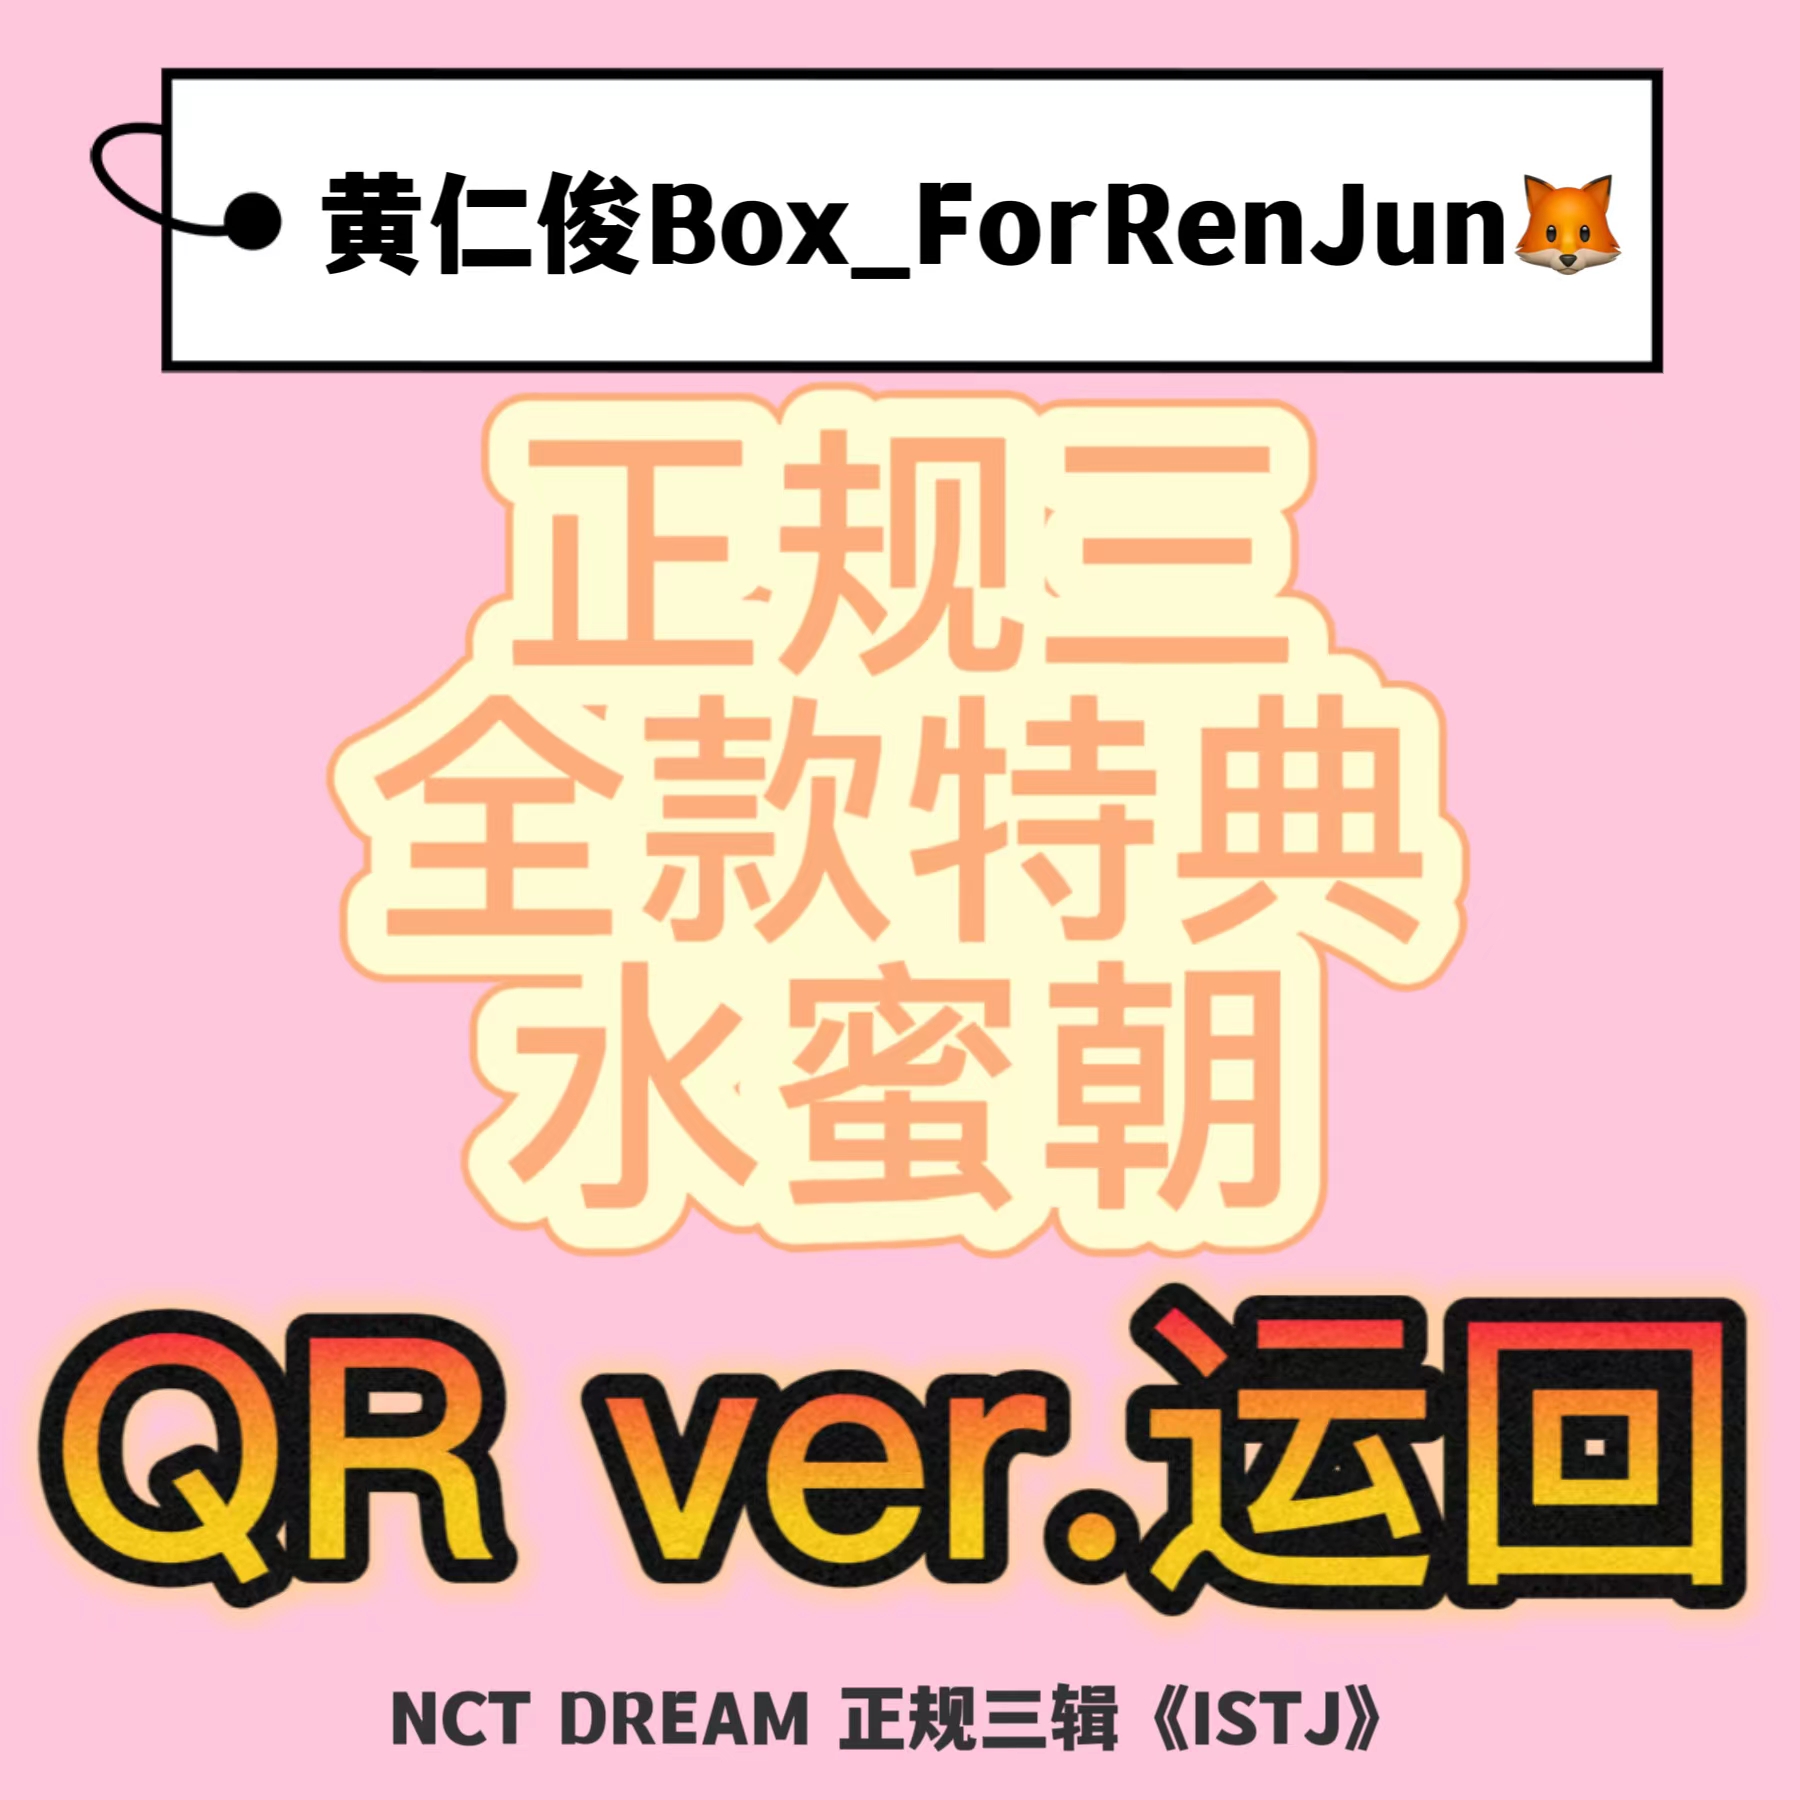 [拆卡专 水蜜朝 特典专] NCT DREAM - 正规3辑 [ISTJ] (7DREAM QR Ver.) (Smart Album) (随机版本)_黄仁俊吧RenJunBar